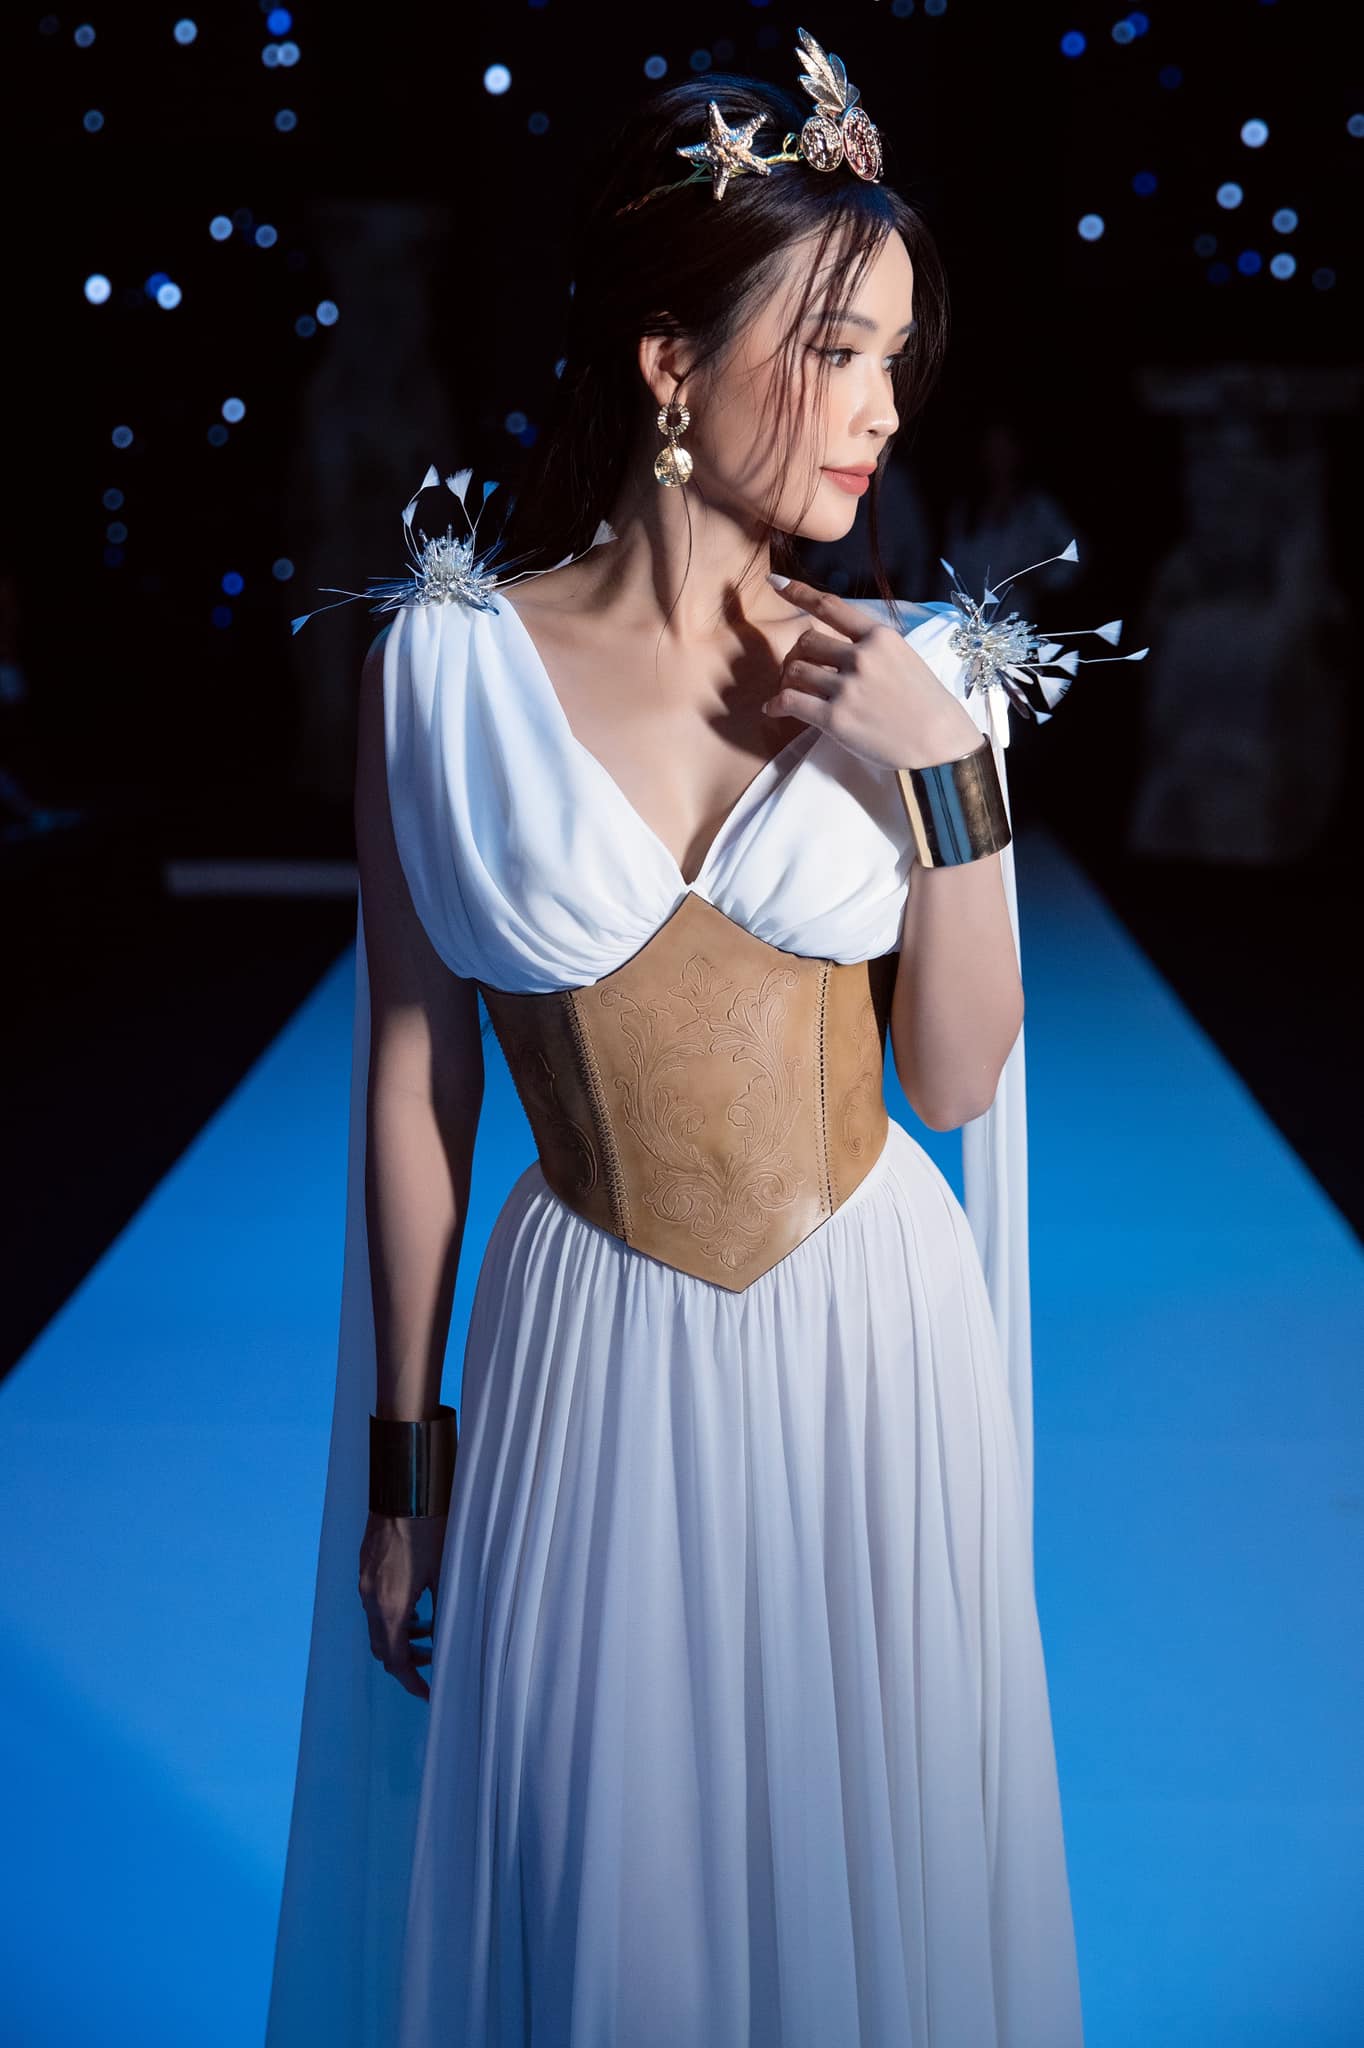 Sam đẹp như nữ thần khi diện thiết kế váy dáng dài màu trắng và kết hợp với corset mang đến nét cổ điển cho bộ đồ. Trang sức cô sử dụng cũng thiên về tone bạc hoặc ánh vàng.